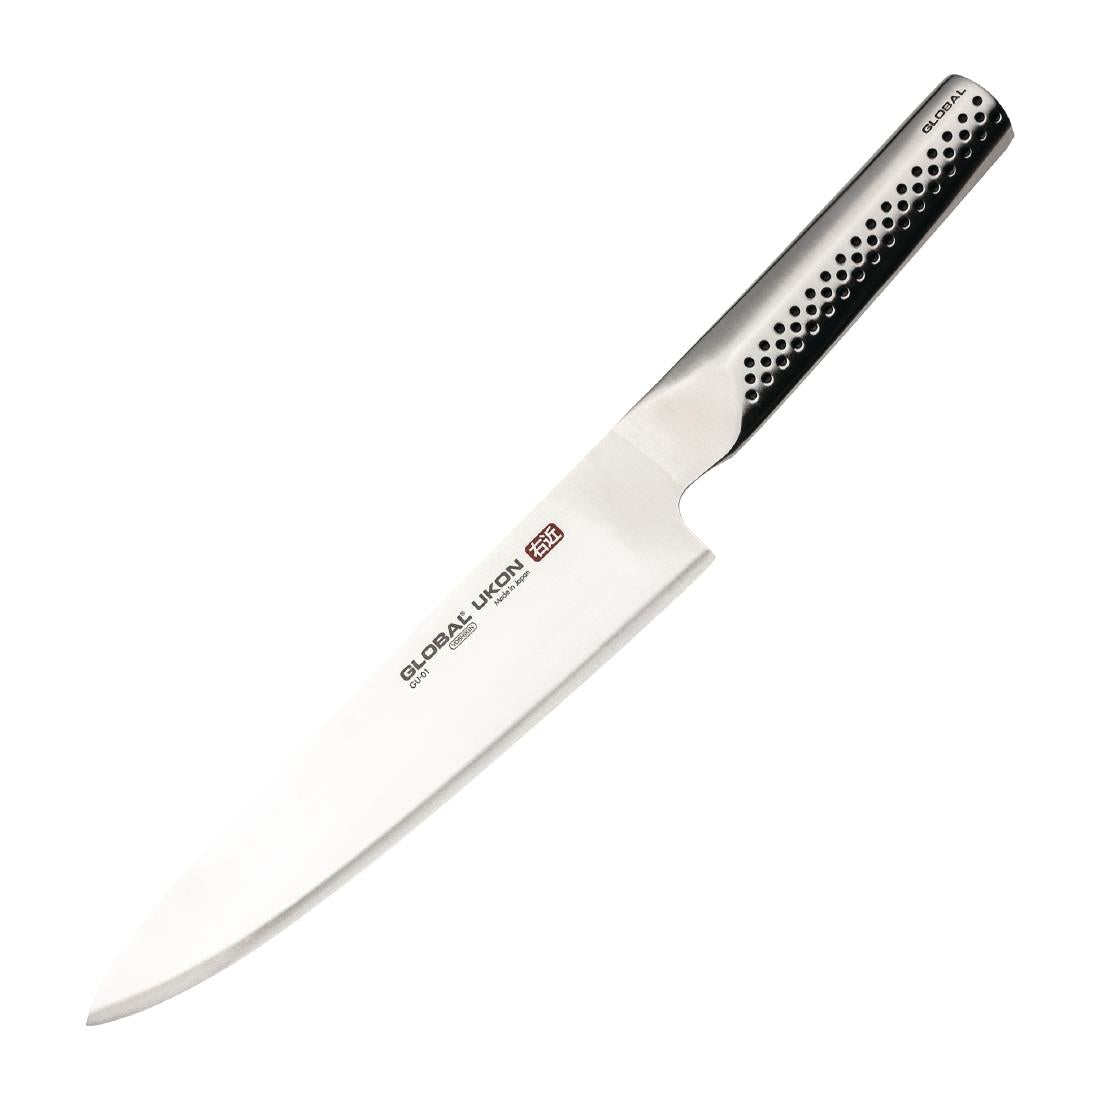 FX050 Global Knives Ukon Range Chef's Knife 20cm JD Catering Equipment Solutions Ltd